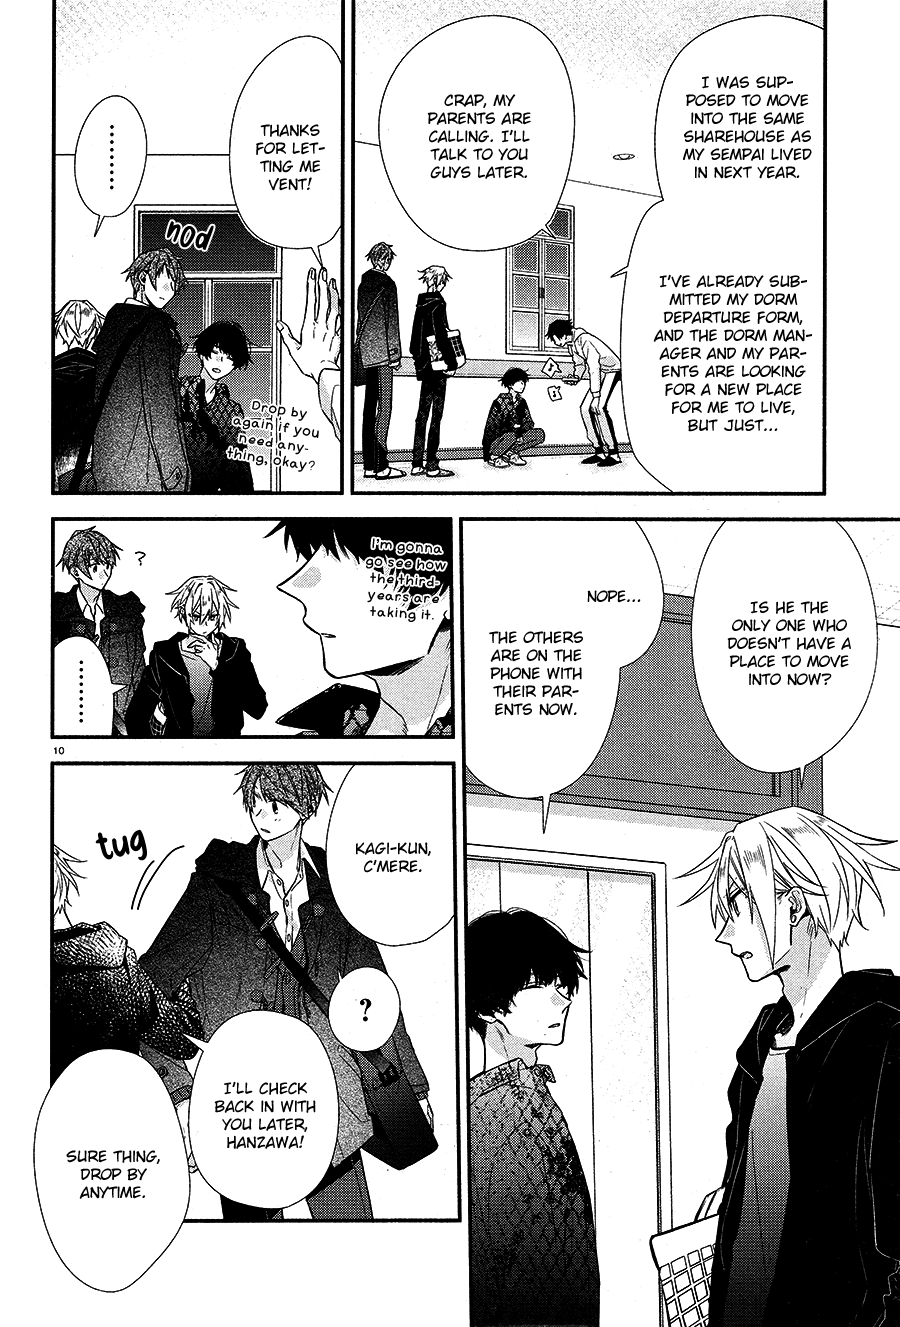 Hirano To Kagiura - 10 page 13